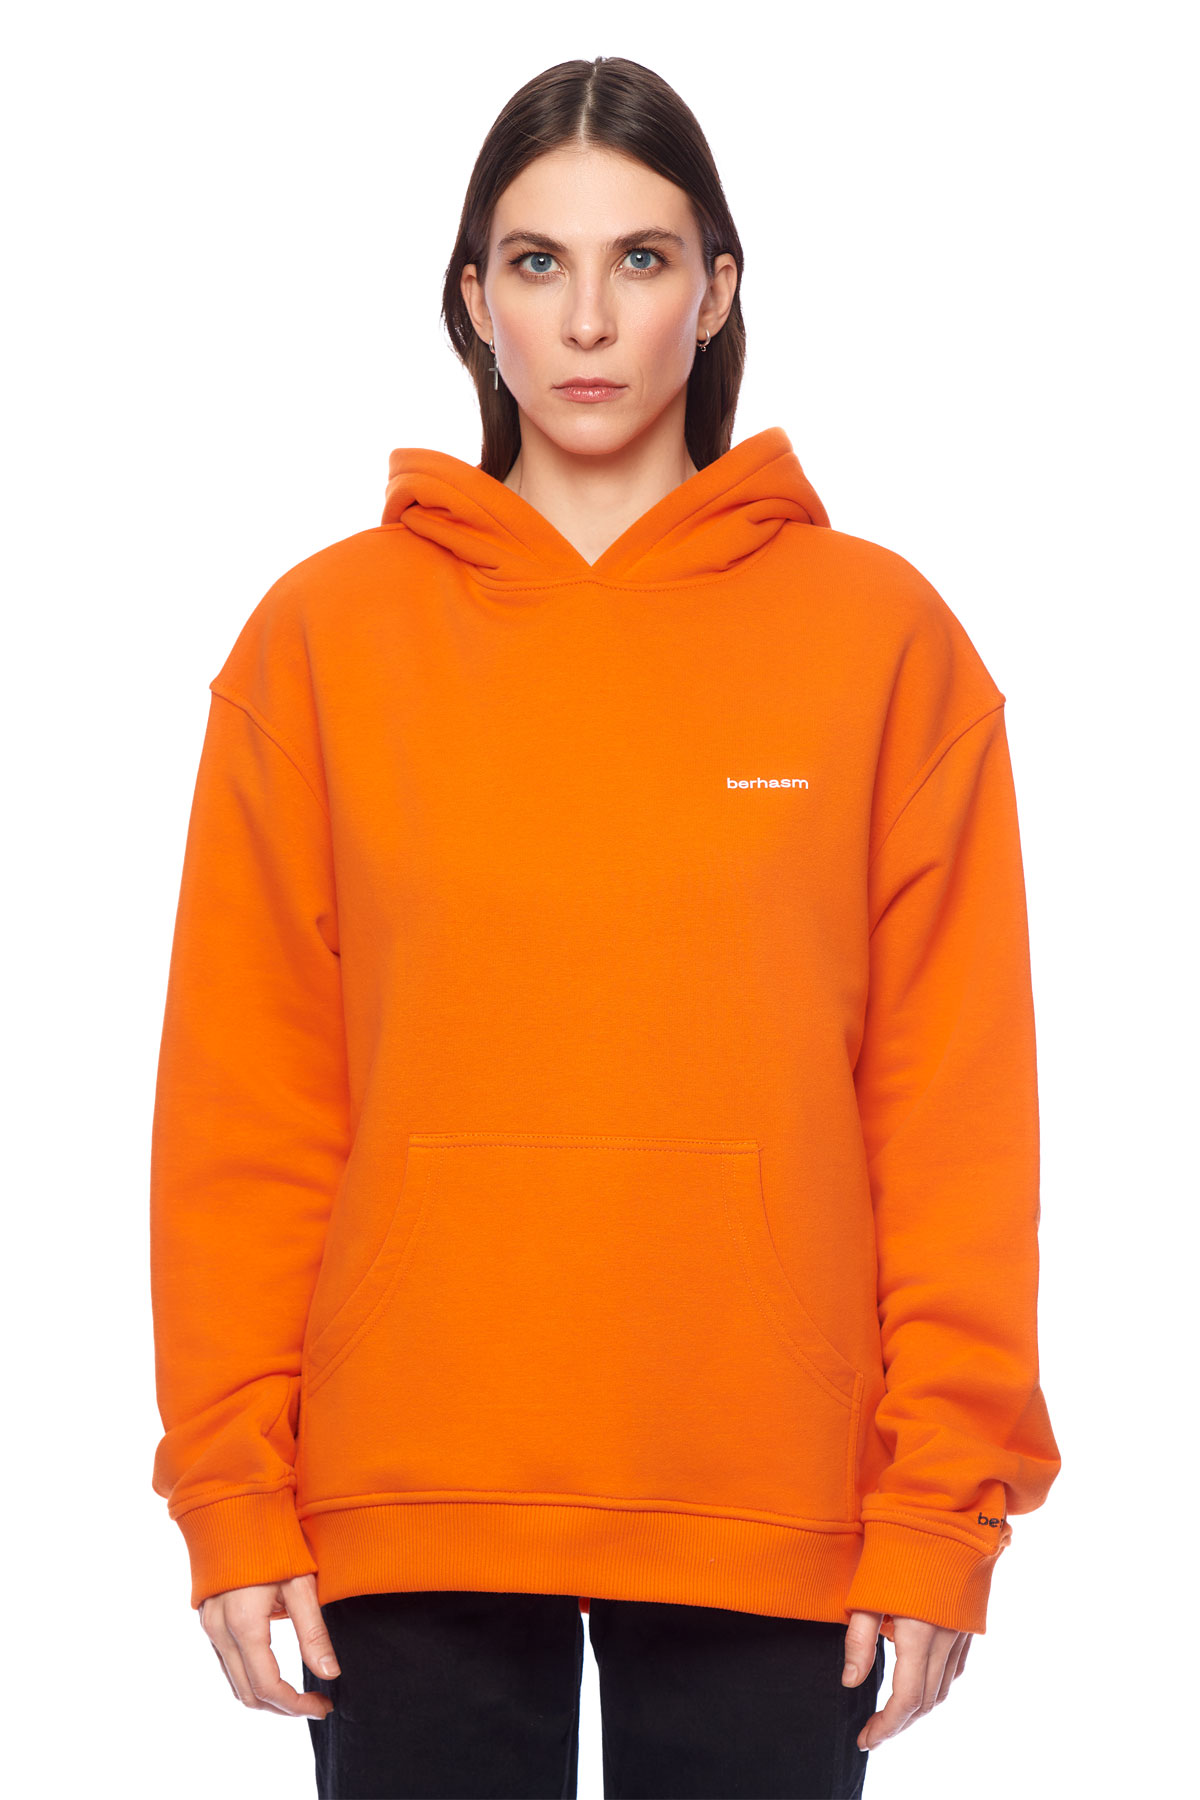 Berhasm logo print hoodie